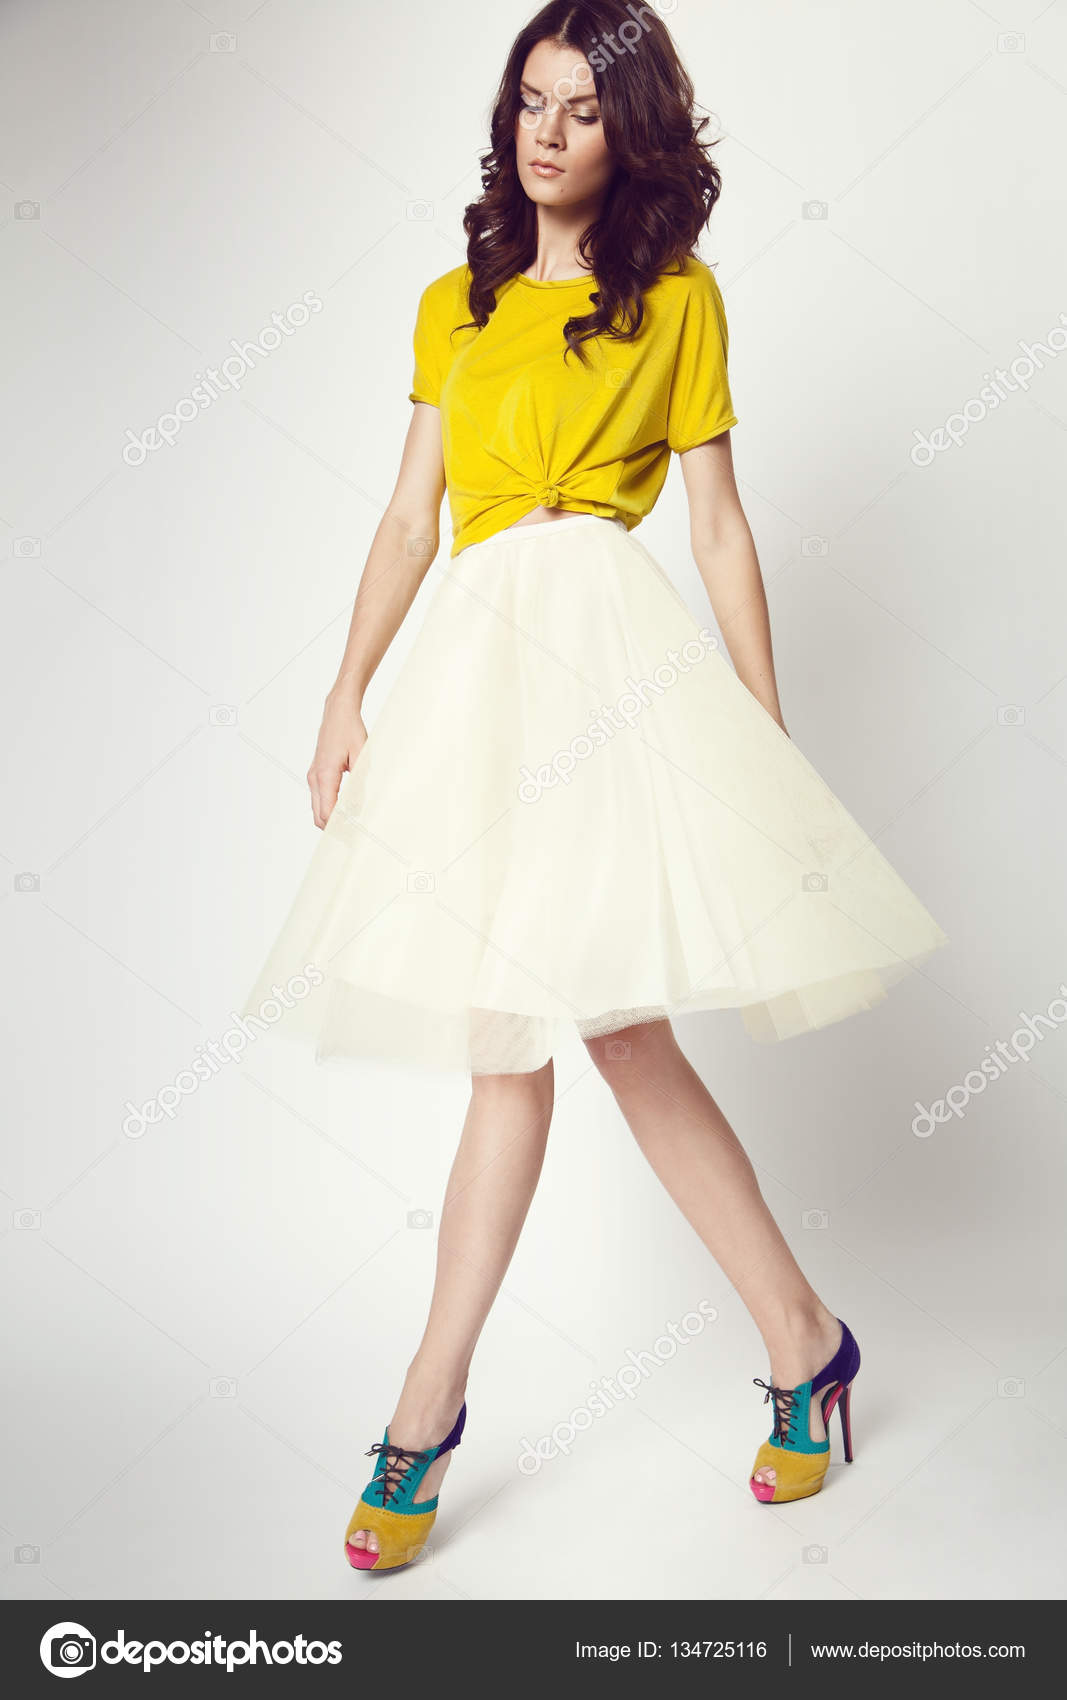 white skirt yellow top